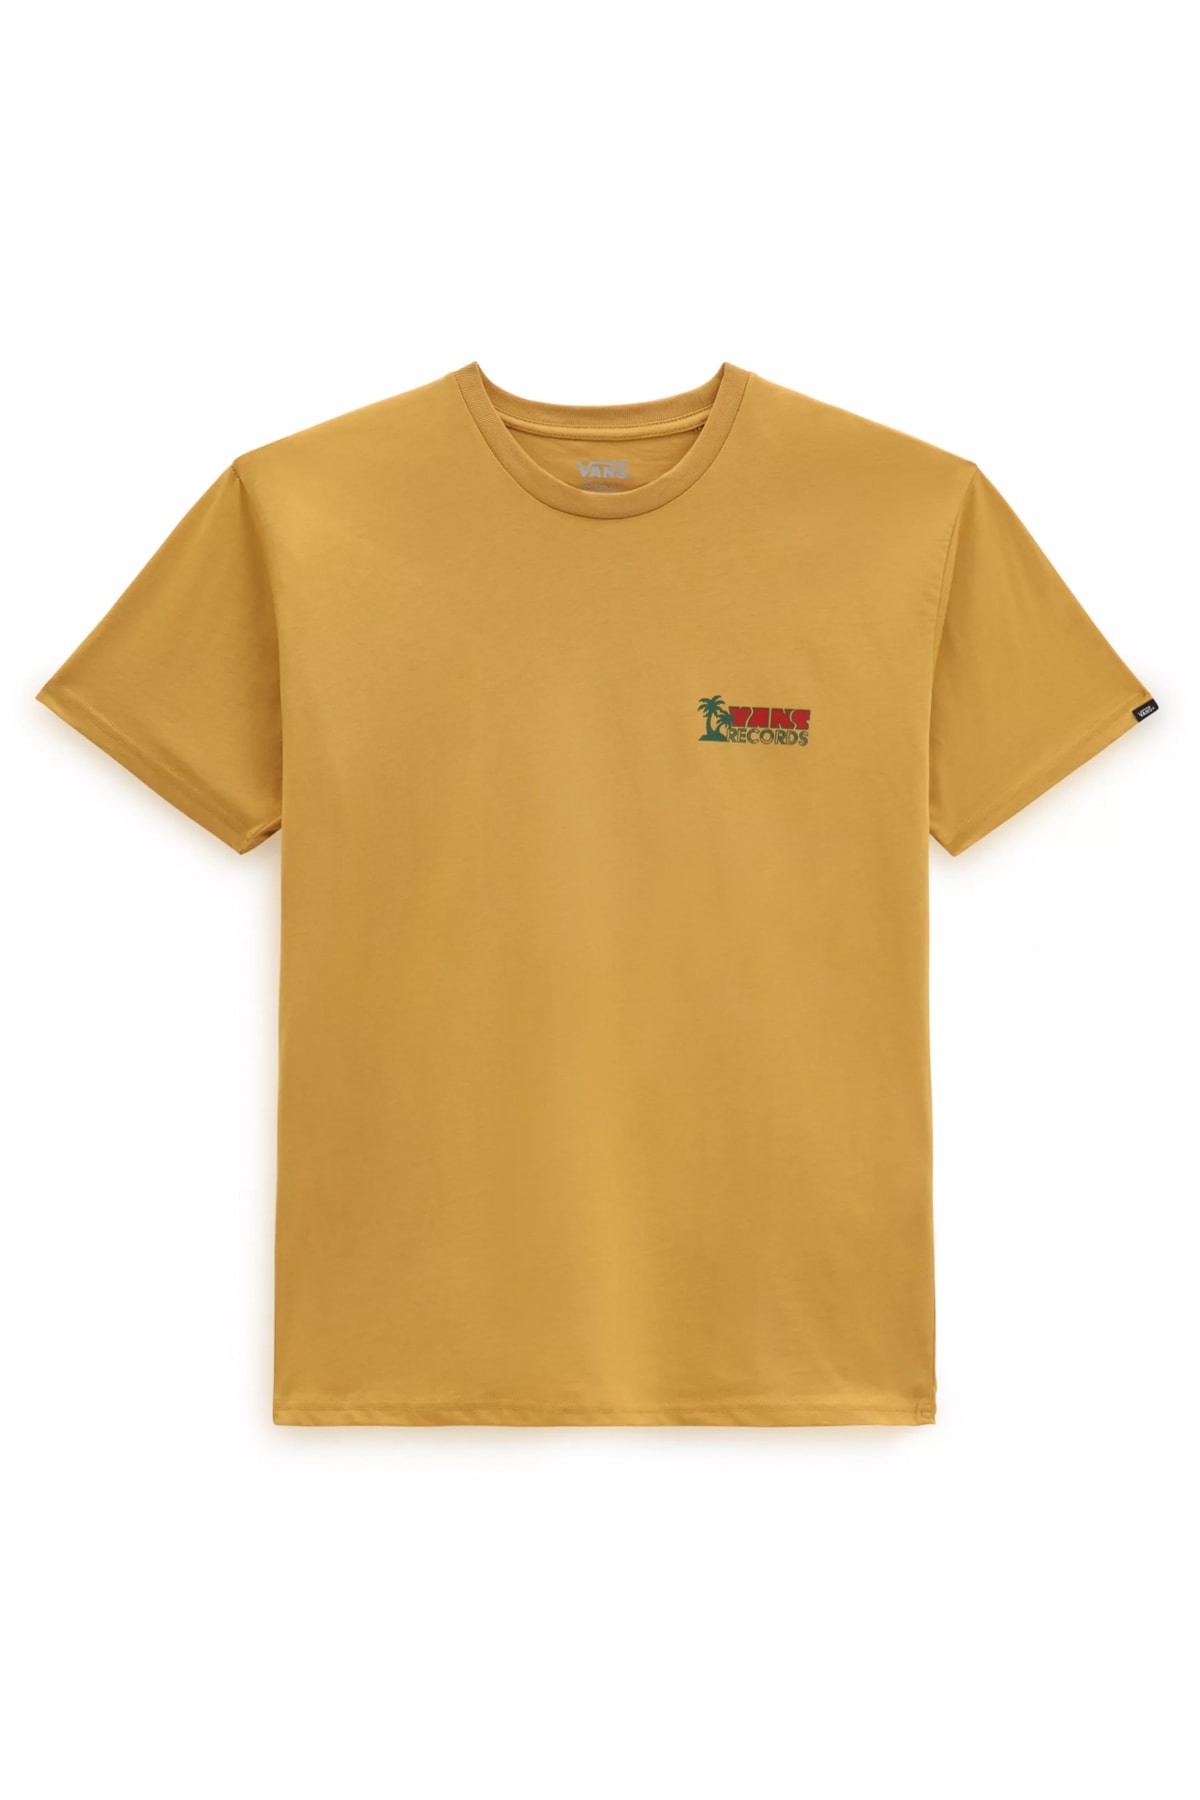 НАРЦИСС Мужская футболка Vans, розовый мужская футболка собачка в кармане чихуа и нарцисс s желтый